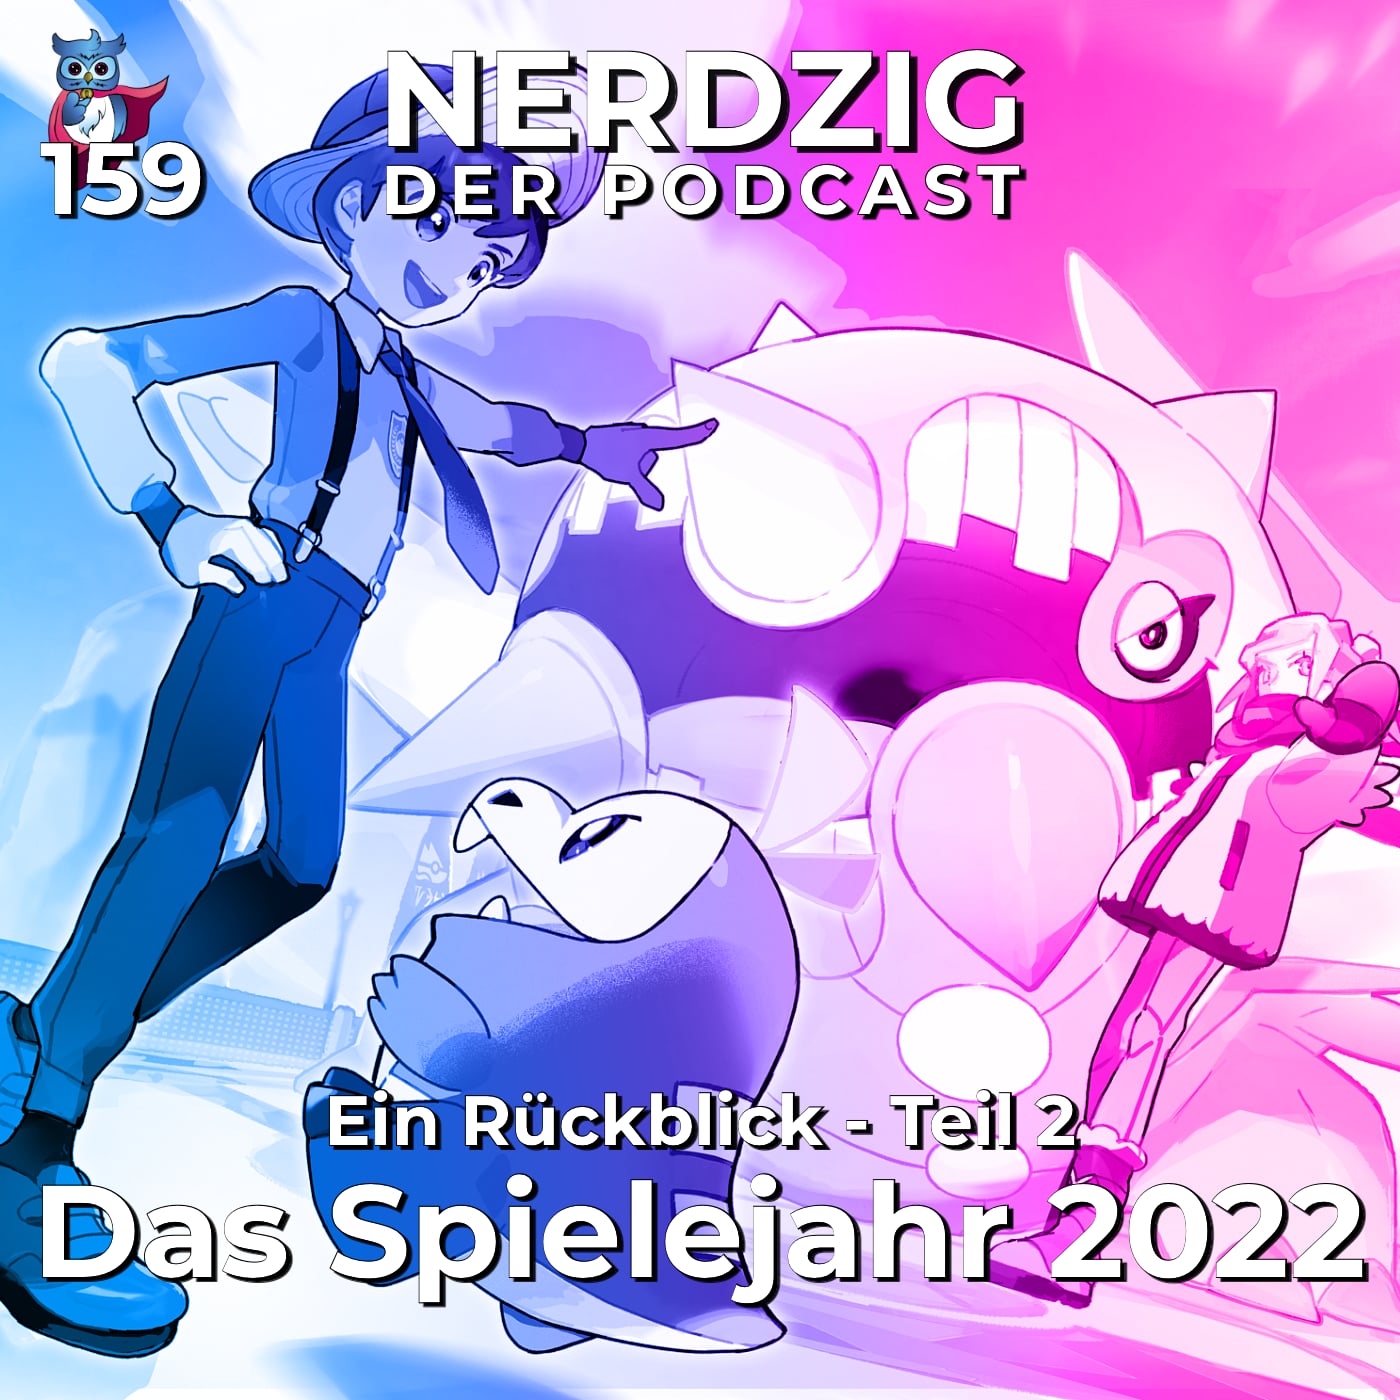 Nerdzig - Der Podcast #159 – Das Spielejahr 2022: Rückblick, Teil 2